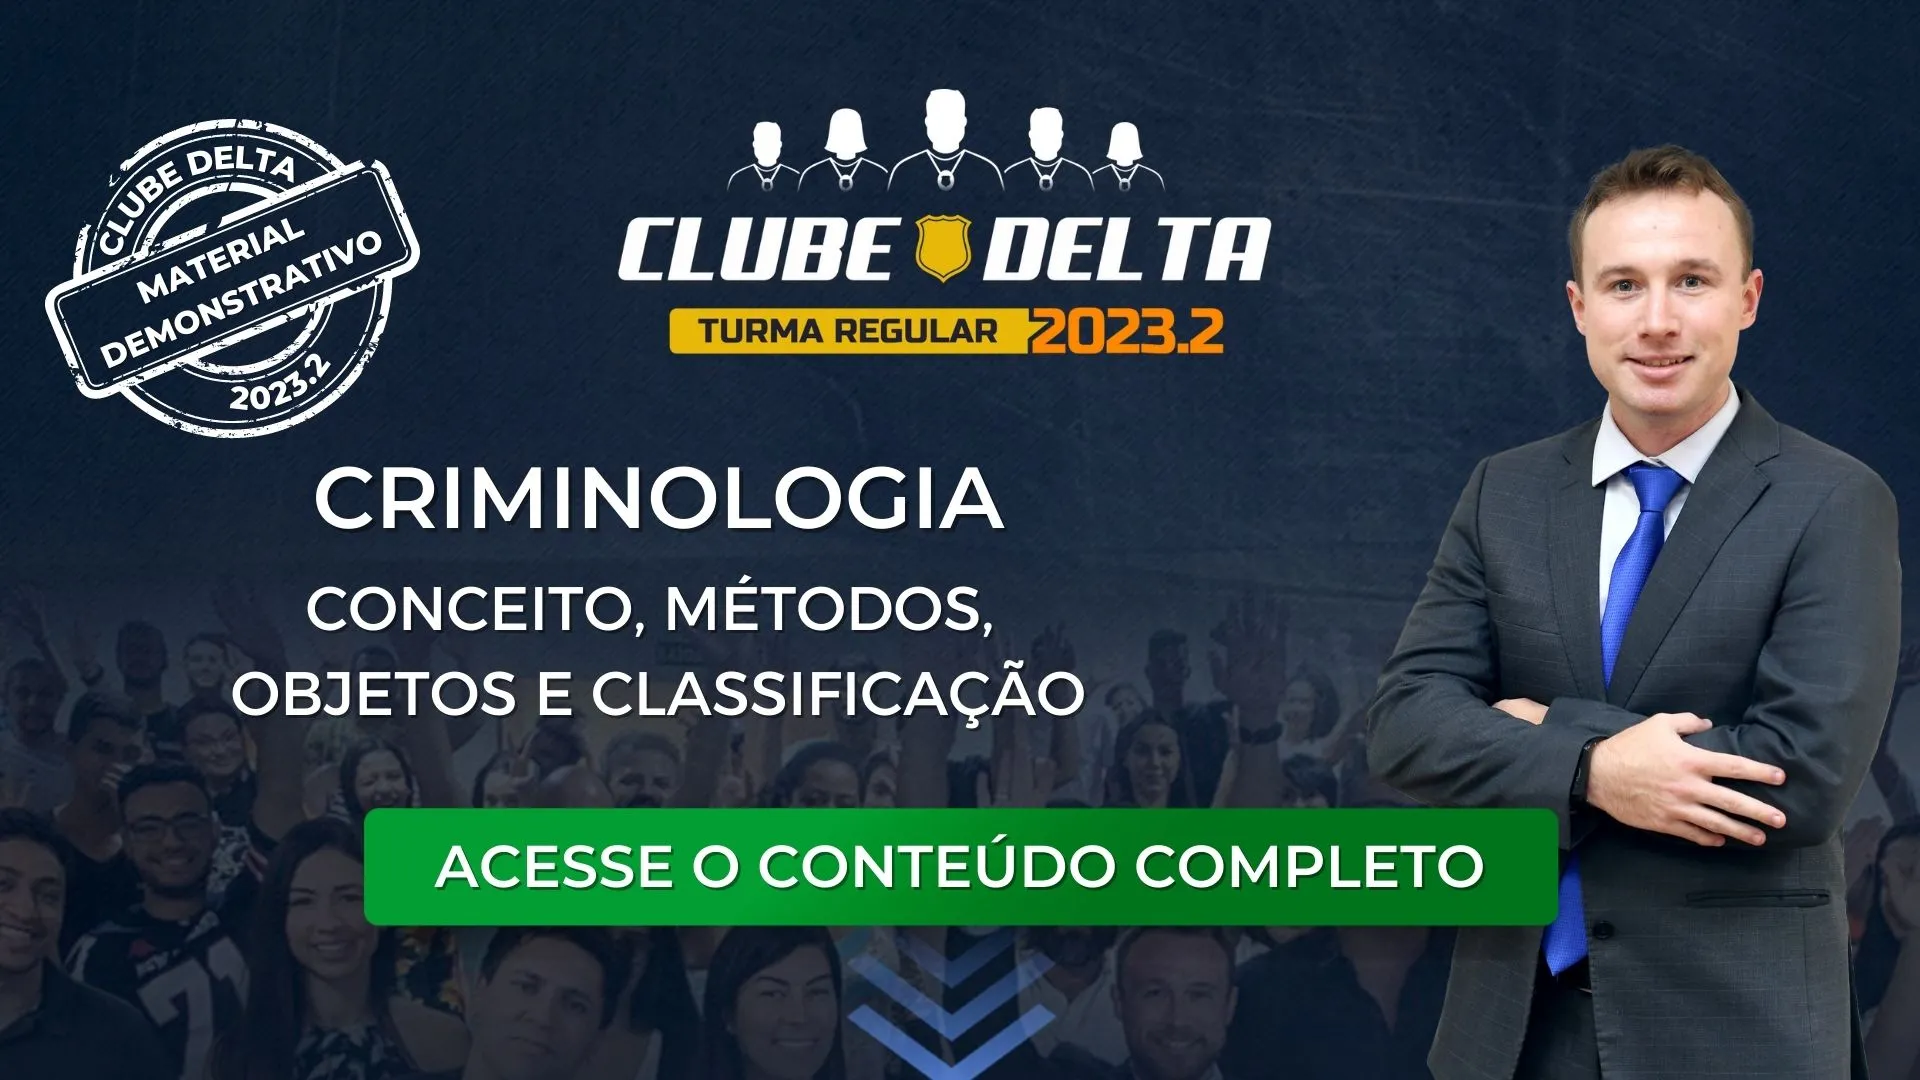 Clube Delta 2023.2: material demonstrativo de criminologia